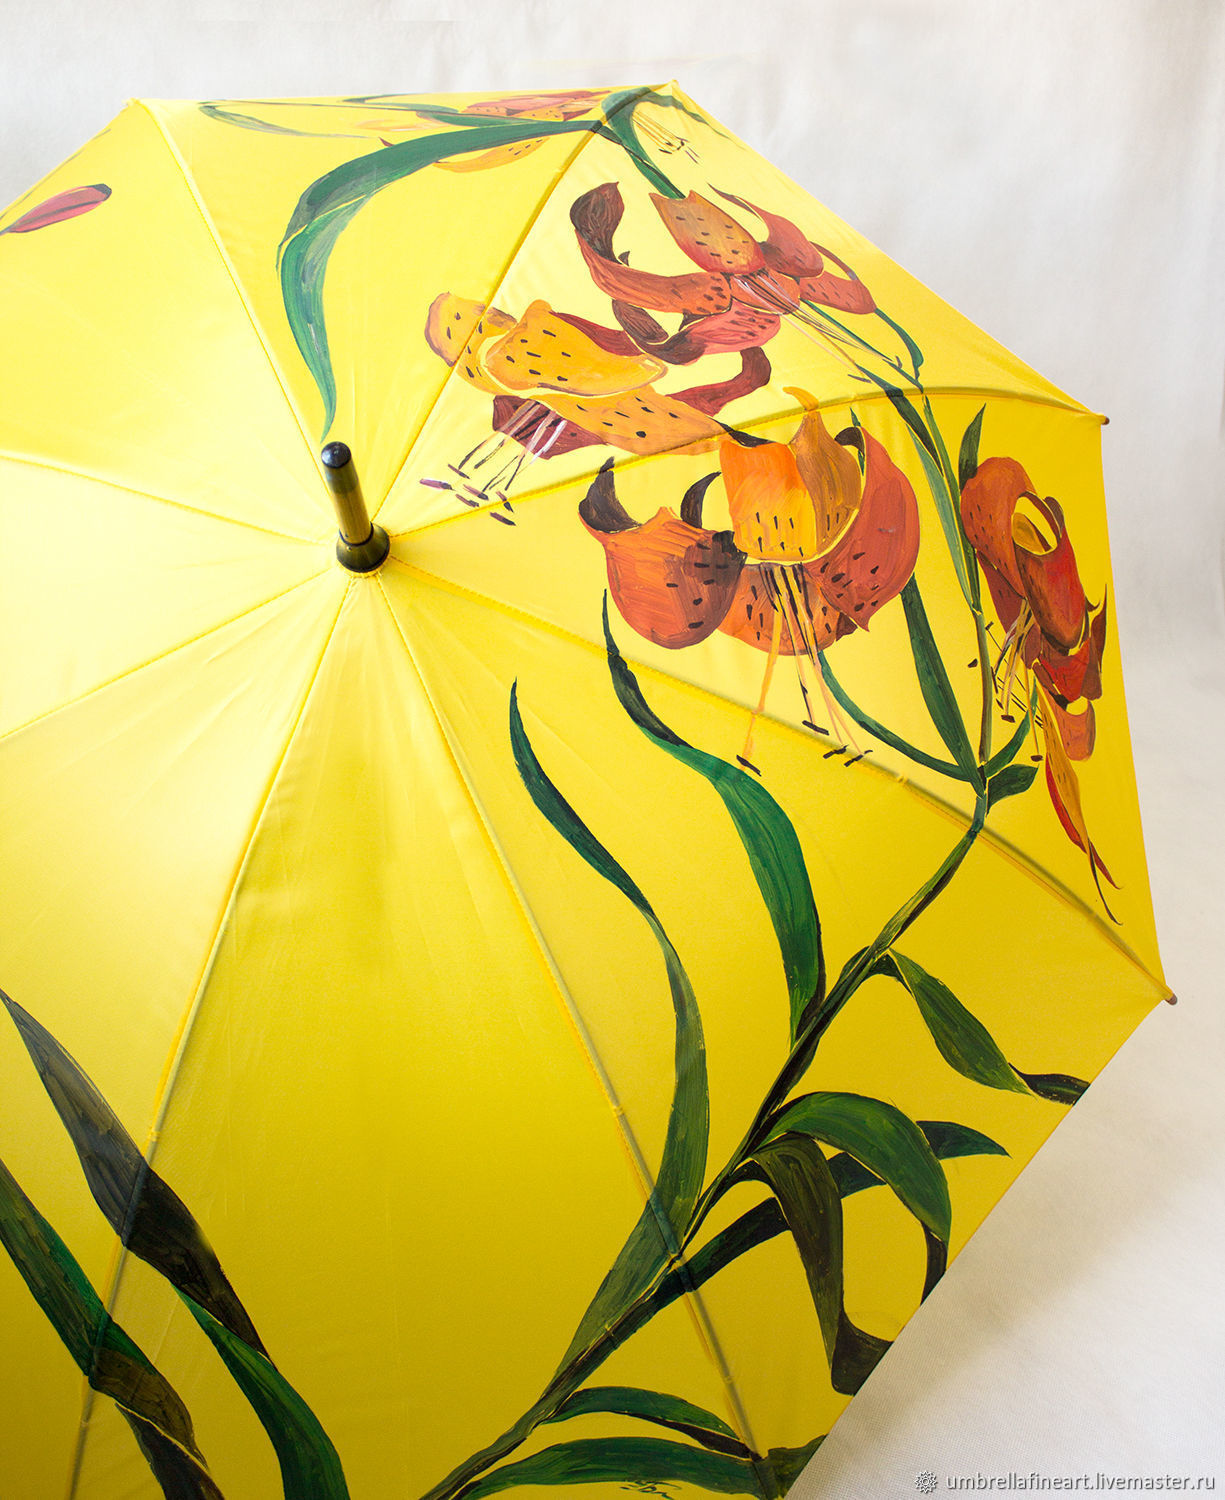 Мастер зонтиков. Зонт расписной. Разрисованные зонты. Роспись зонтиков. Зонт с ручной росписью.